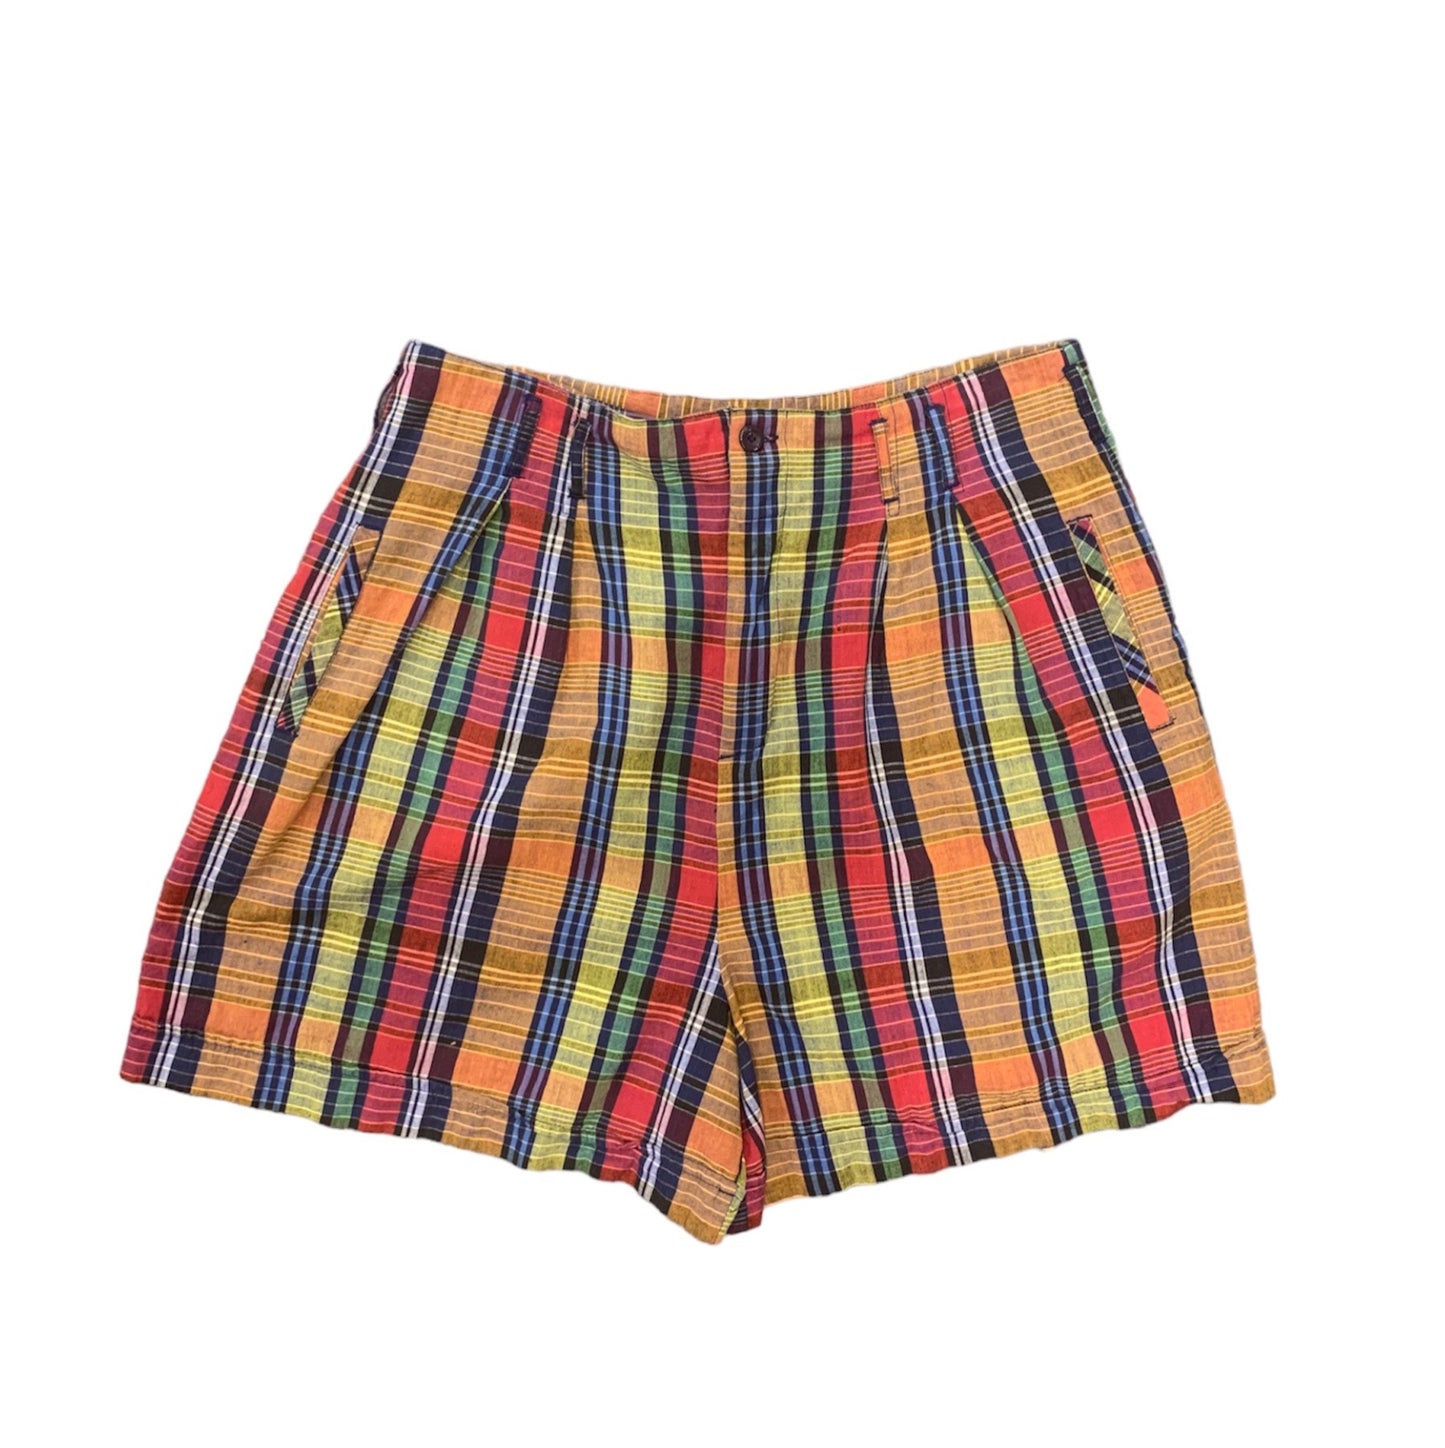 90’s plaid cotton shorts